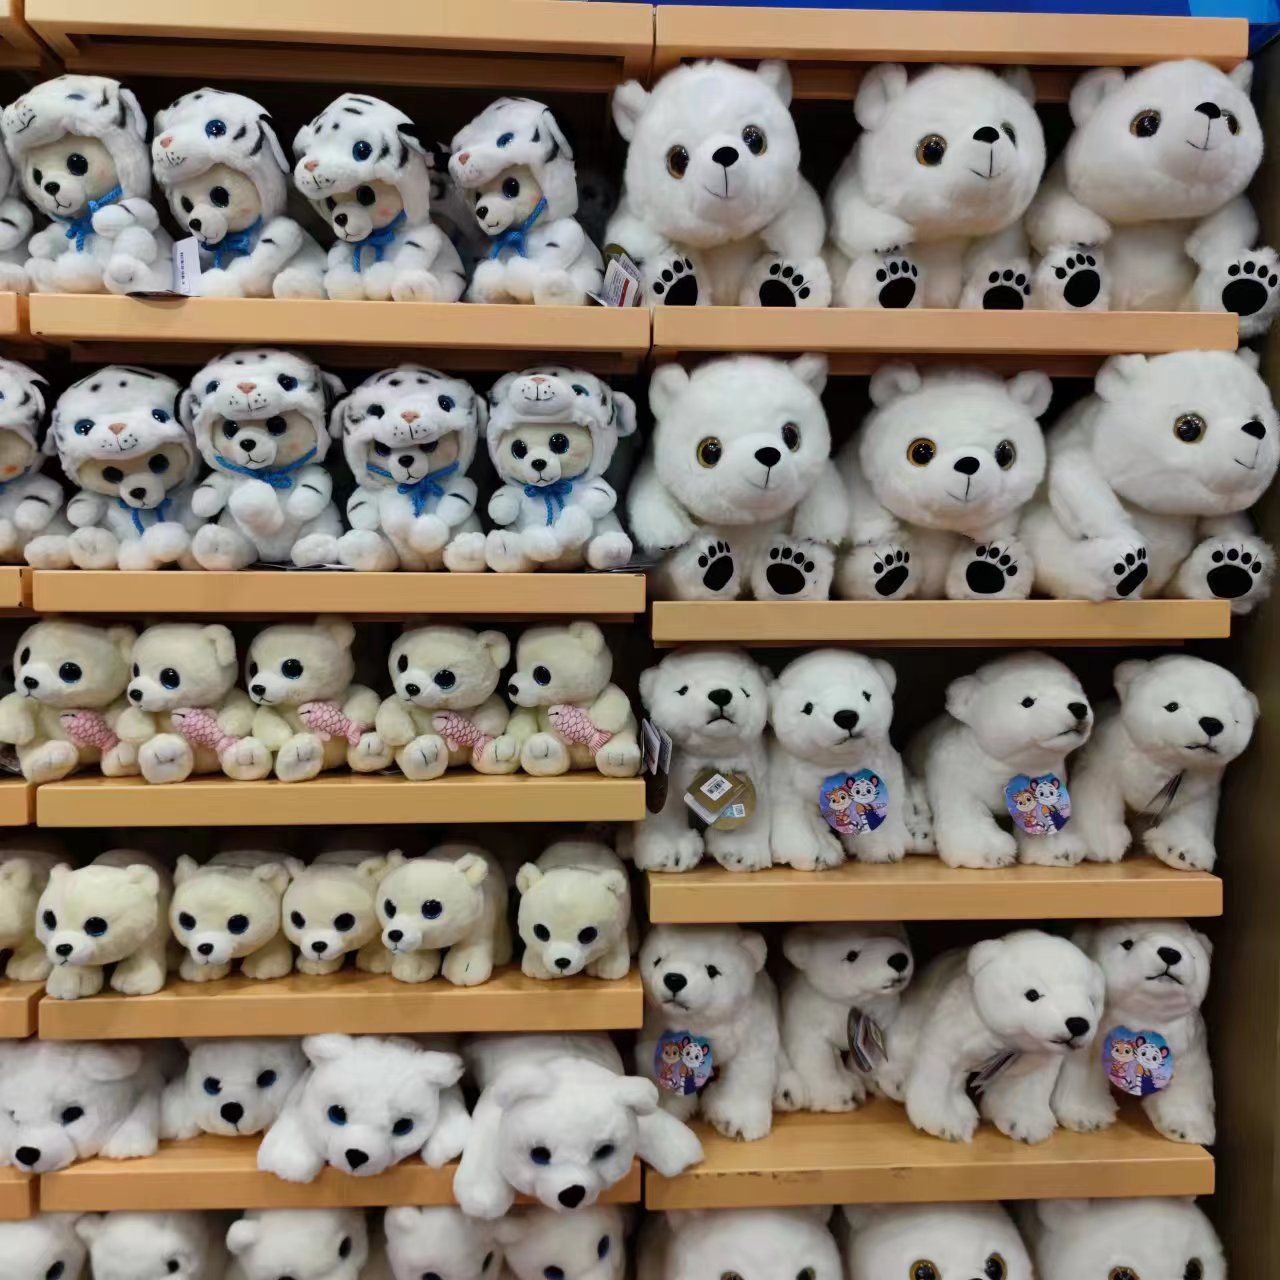 长隆野生动物园纪念品玩具新款白虎黄老虎毛绒公仔娃娃玩偶代购-Taobao